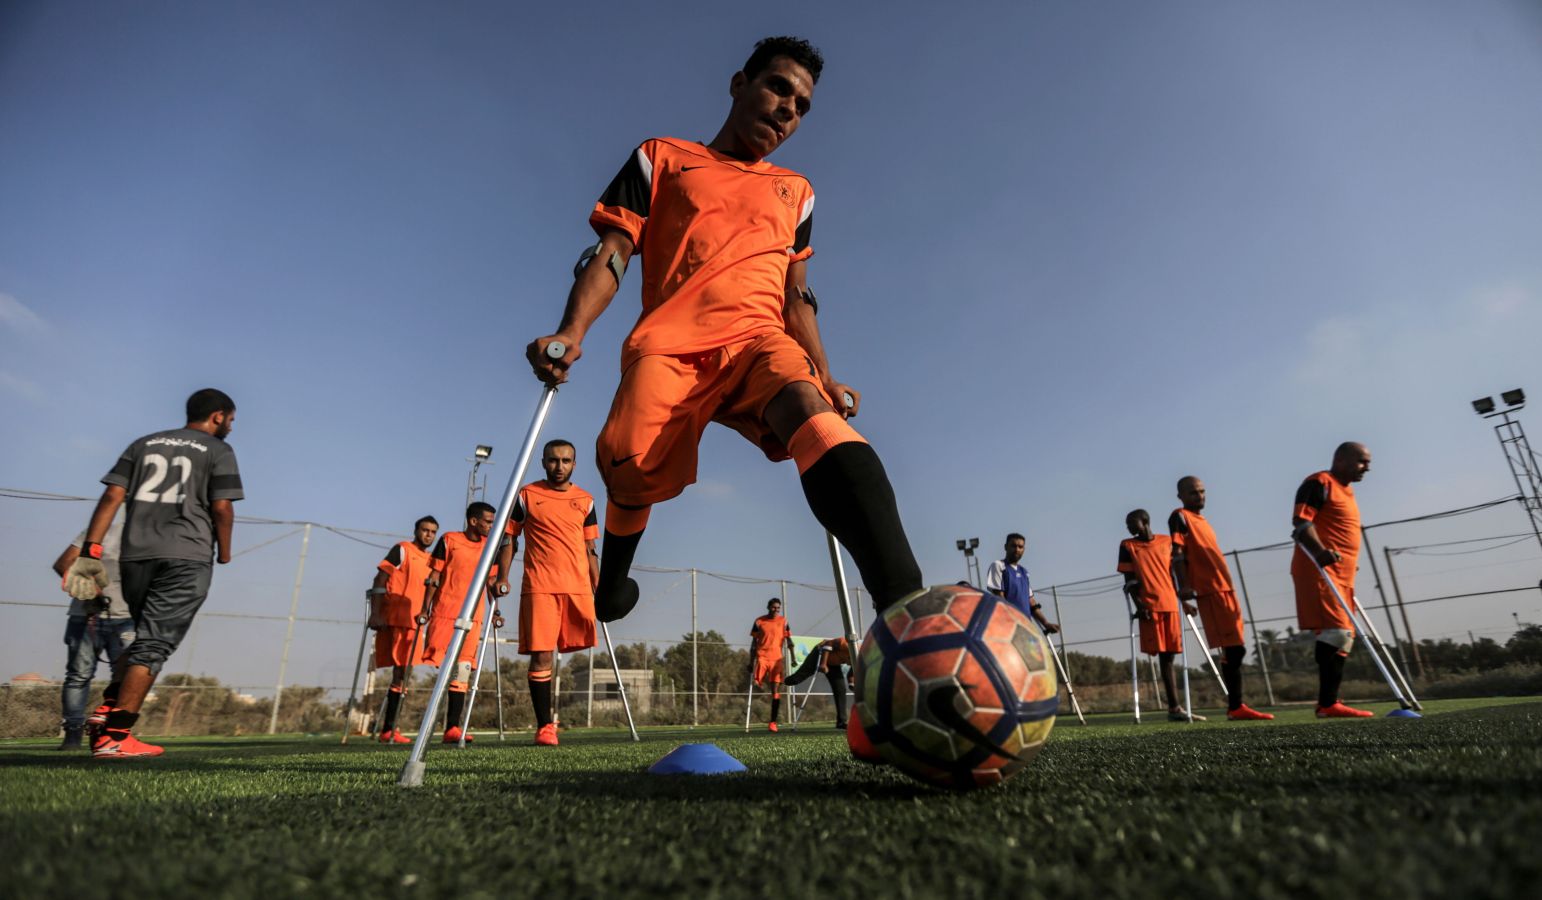 Jugadores de fútbol amputados palestinos participan en una sesión de entrenamiento de su equipo en el estadio Deir Al Balah, en el centro de la Franja de Gaza.